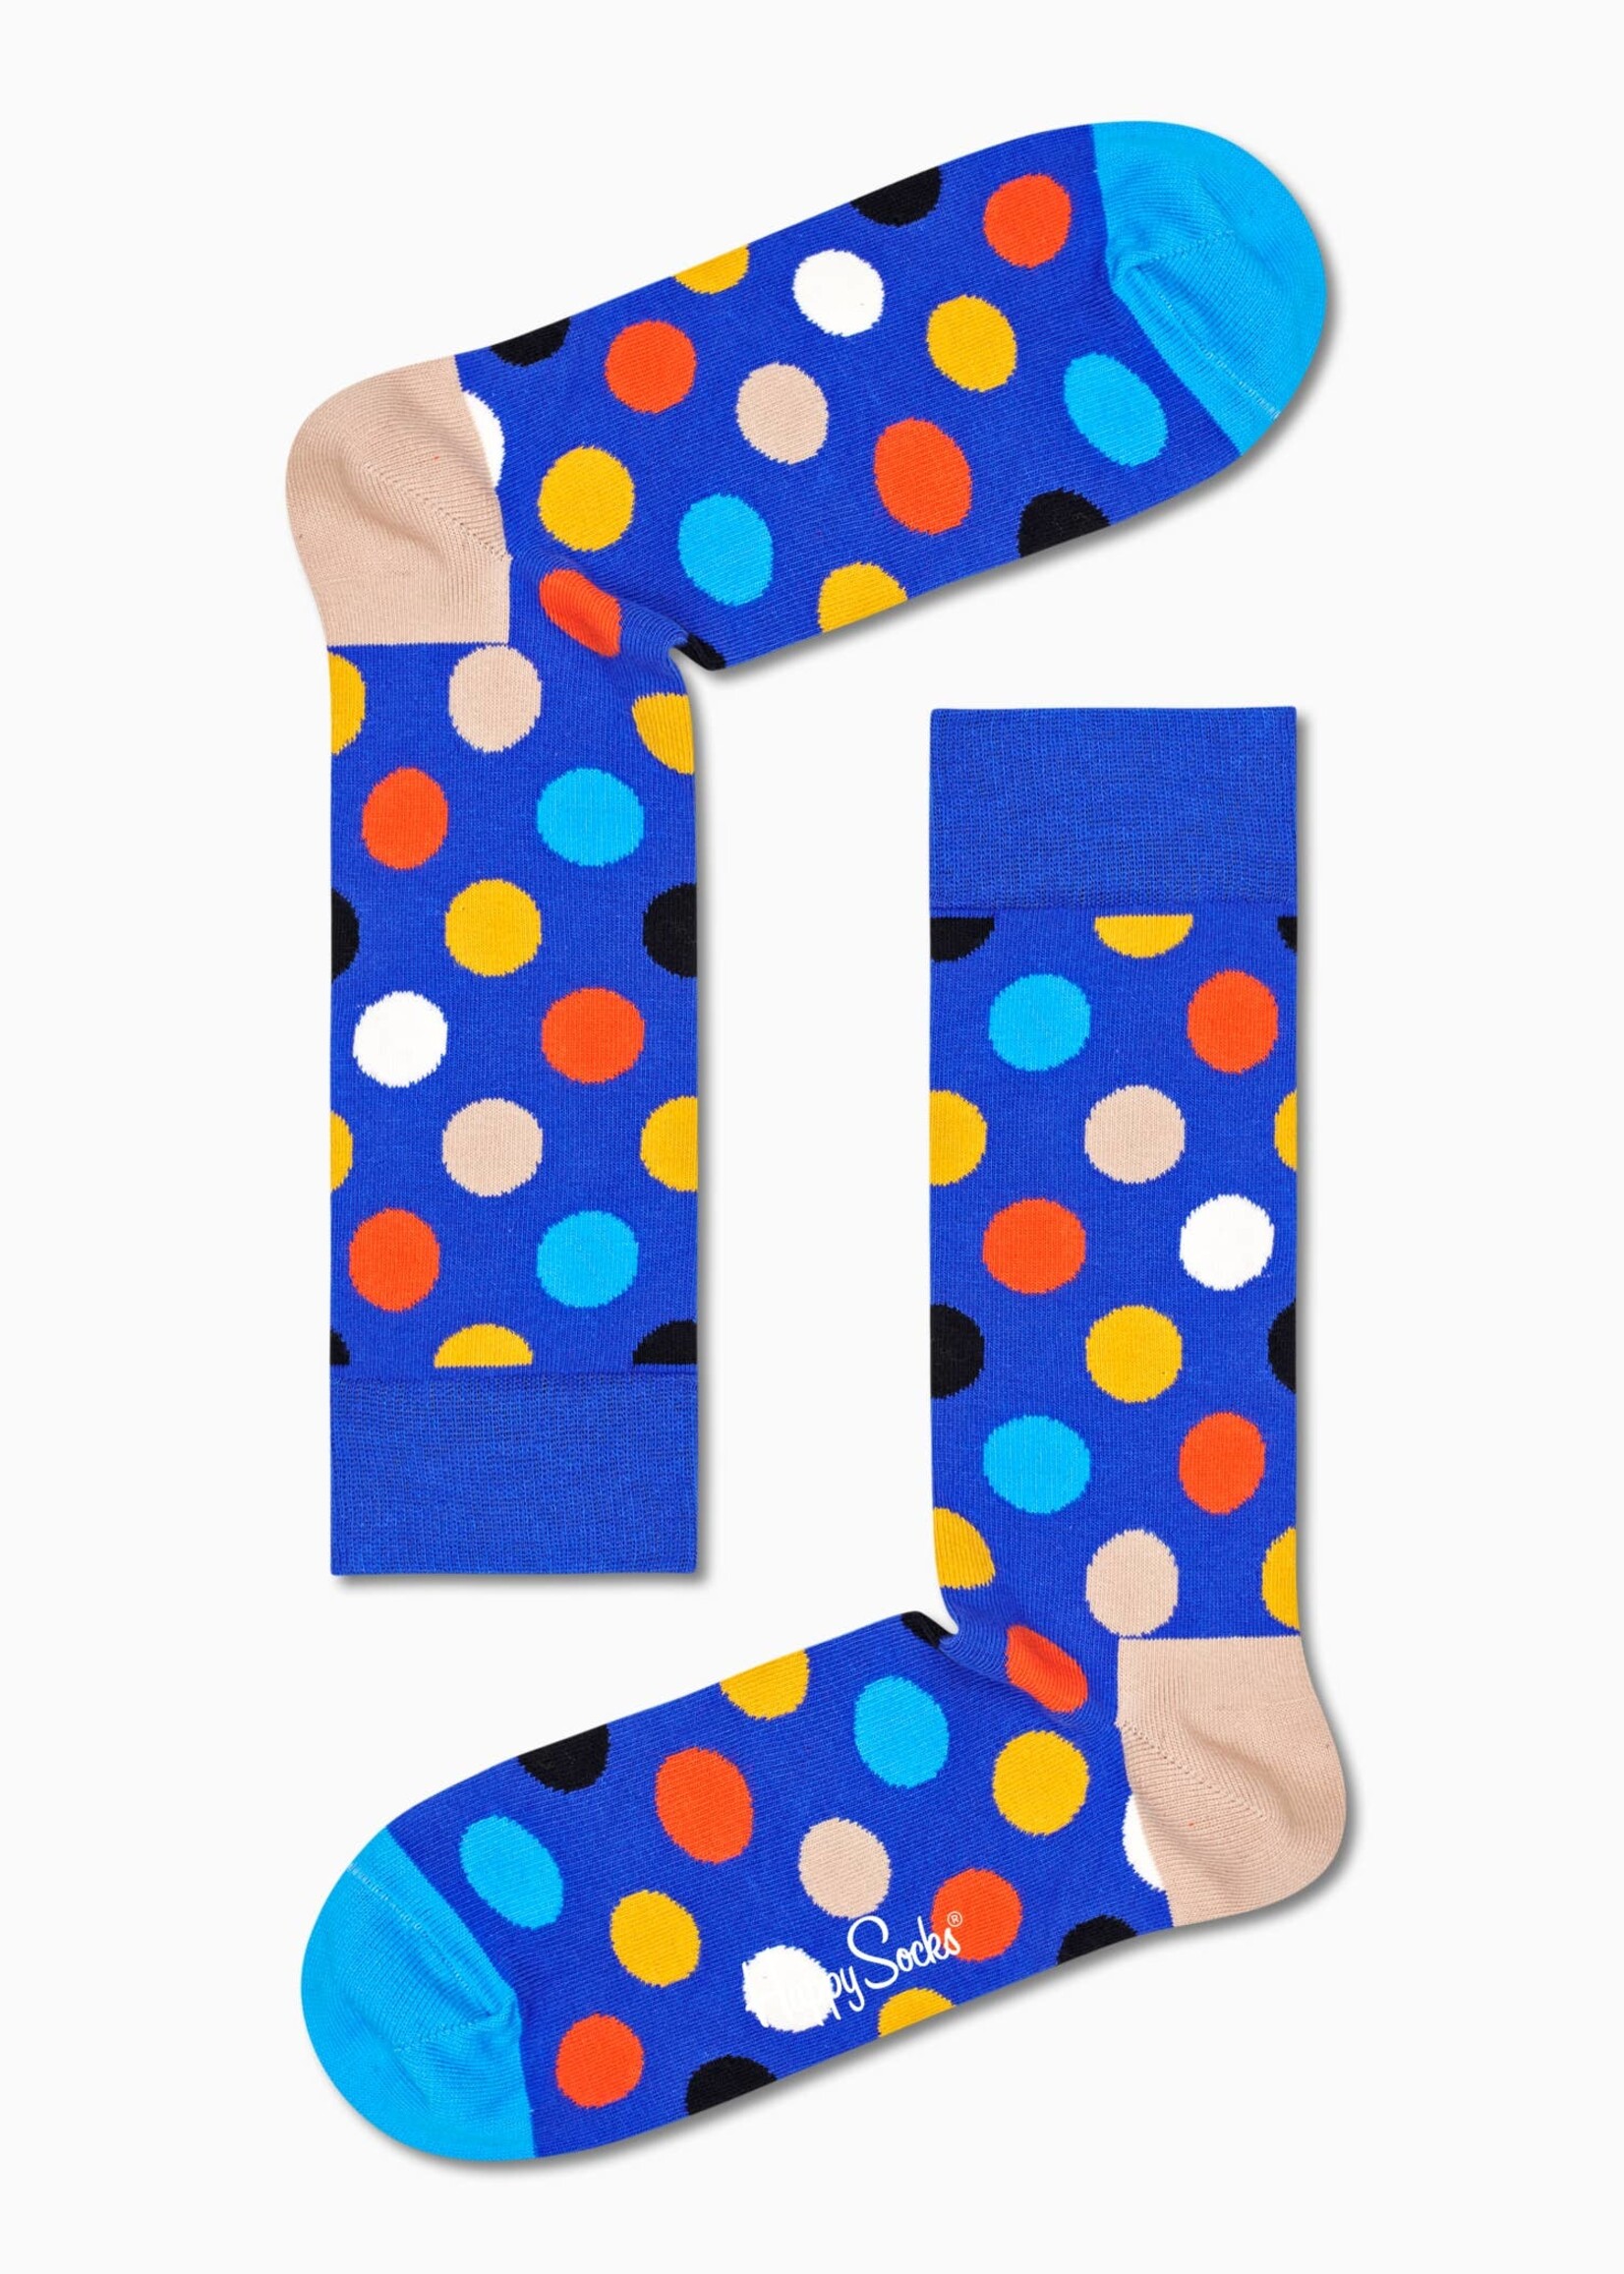 Big Dot Sock Grösse 36-40 (Einheitsgrösse)